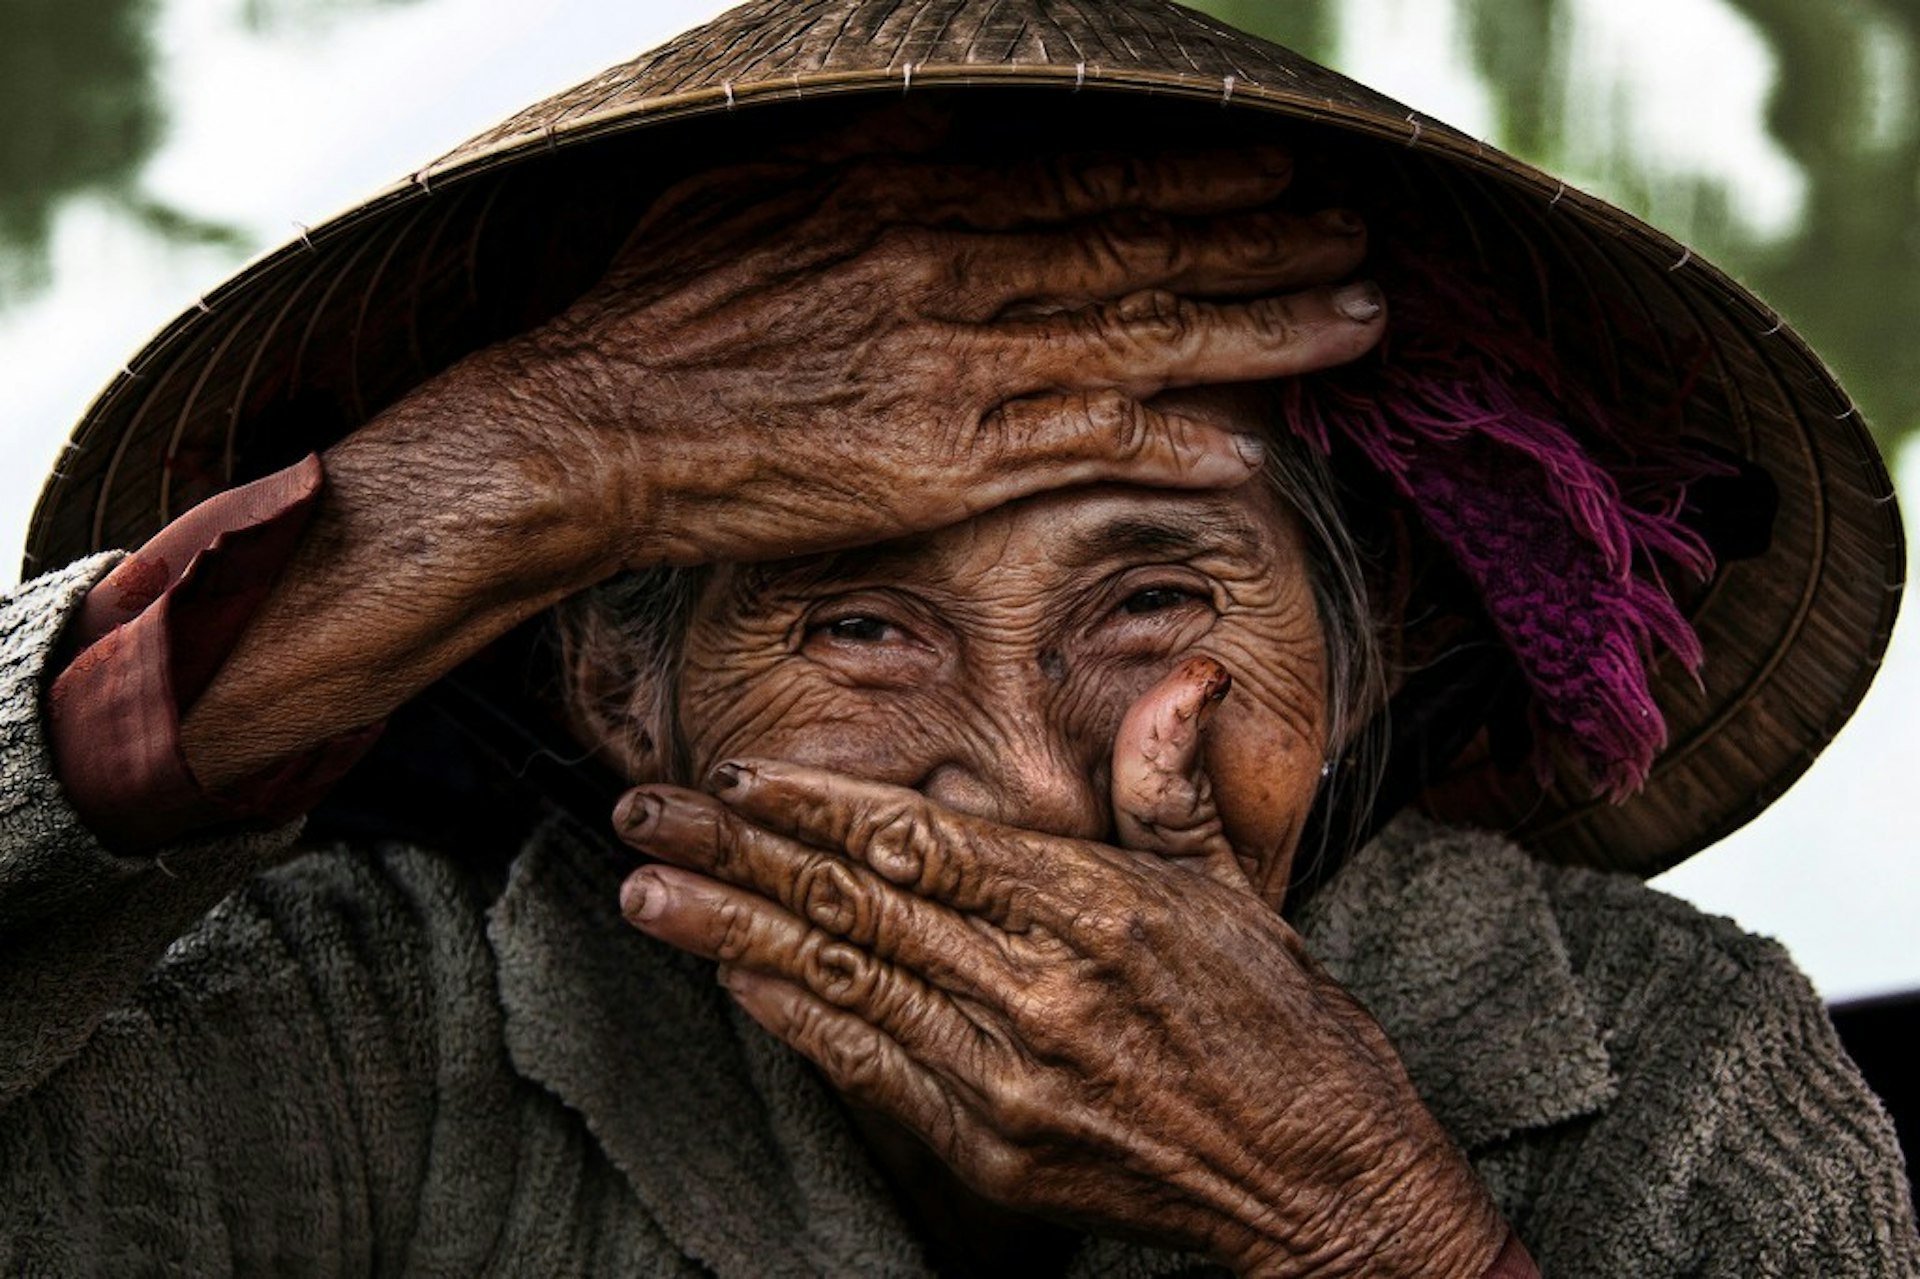 In Pictures: The hidden communities of remote Vietnam